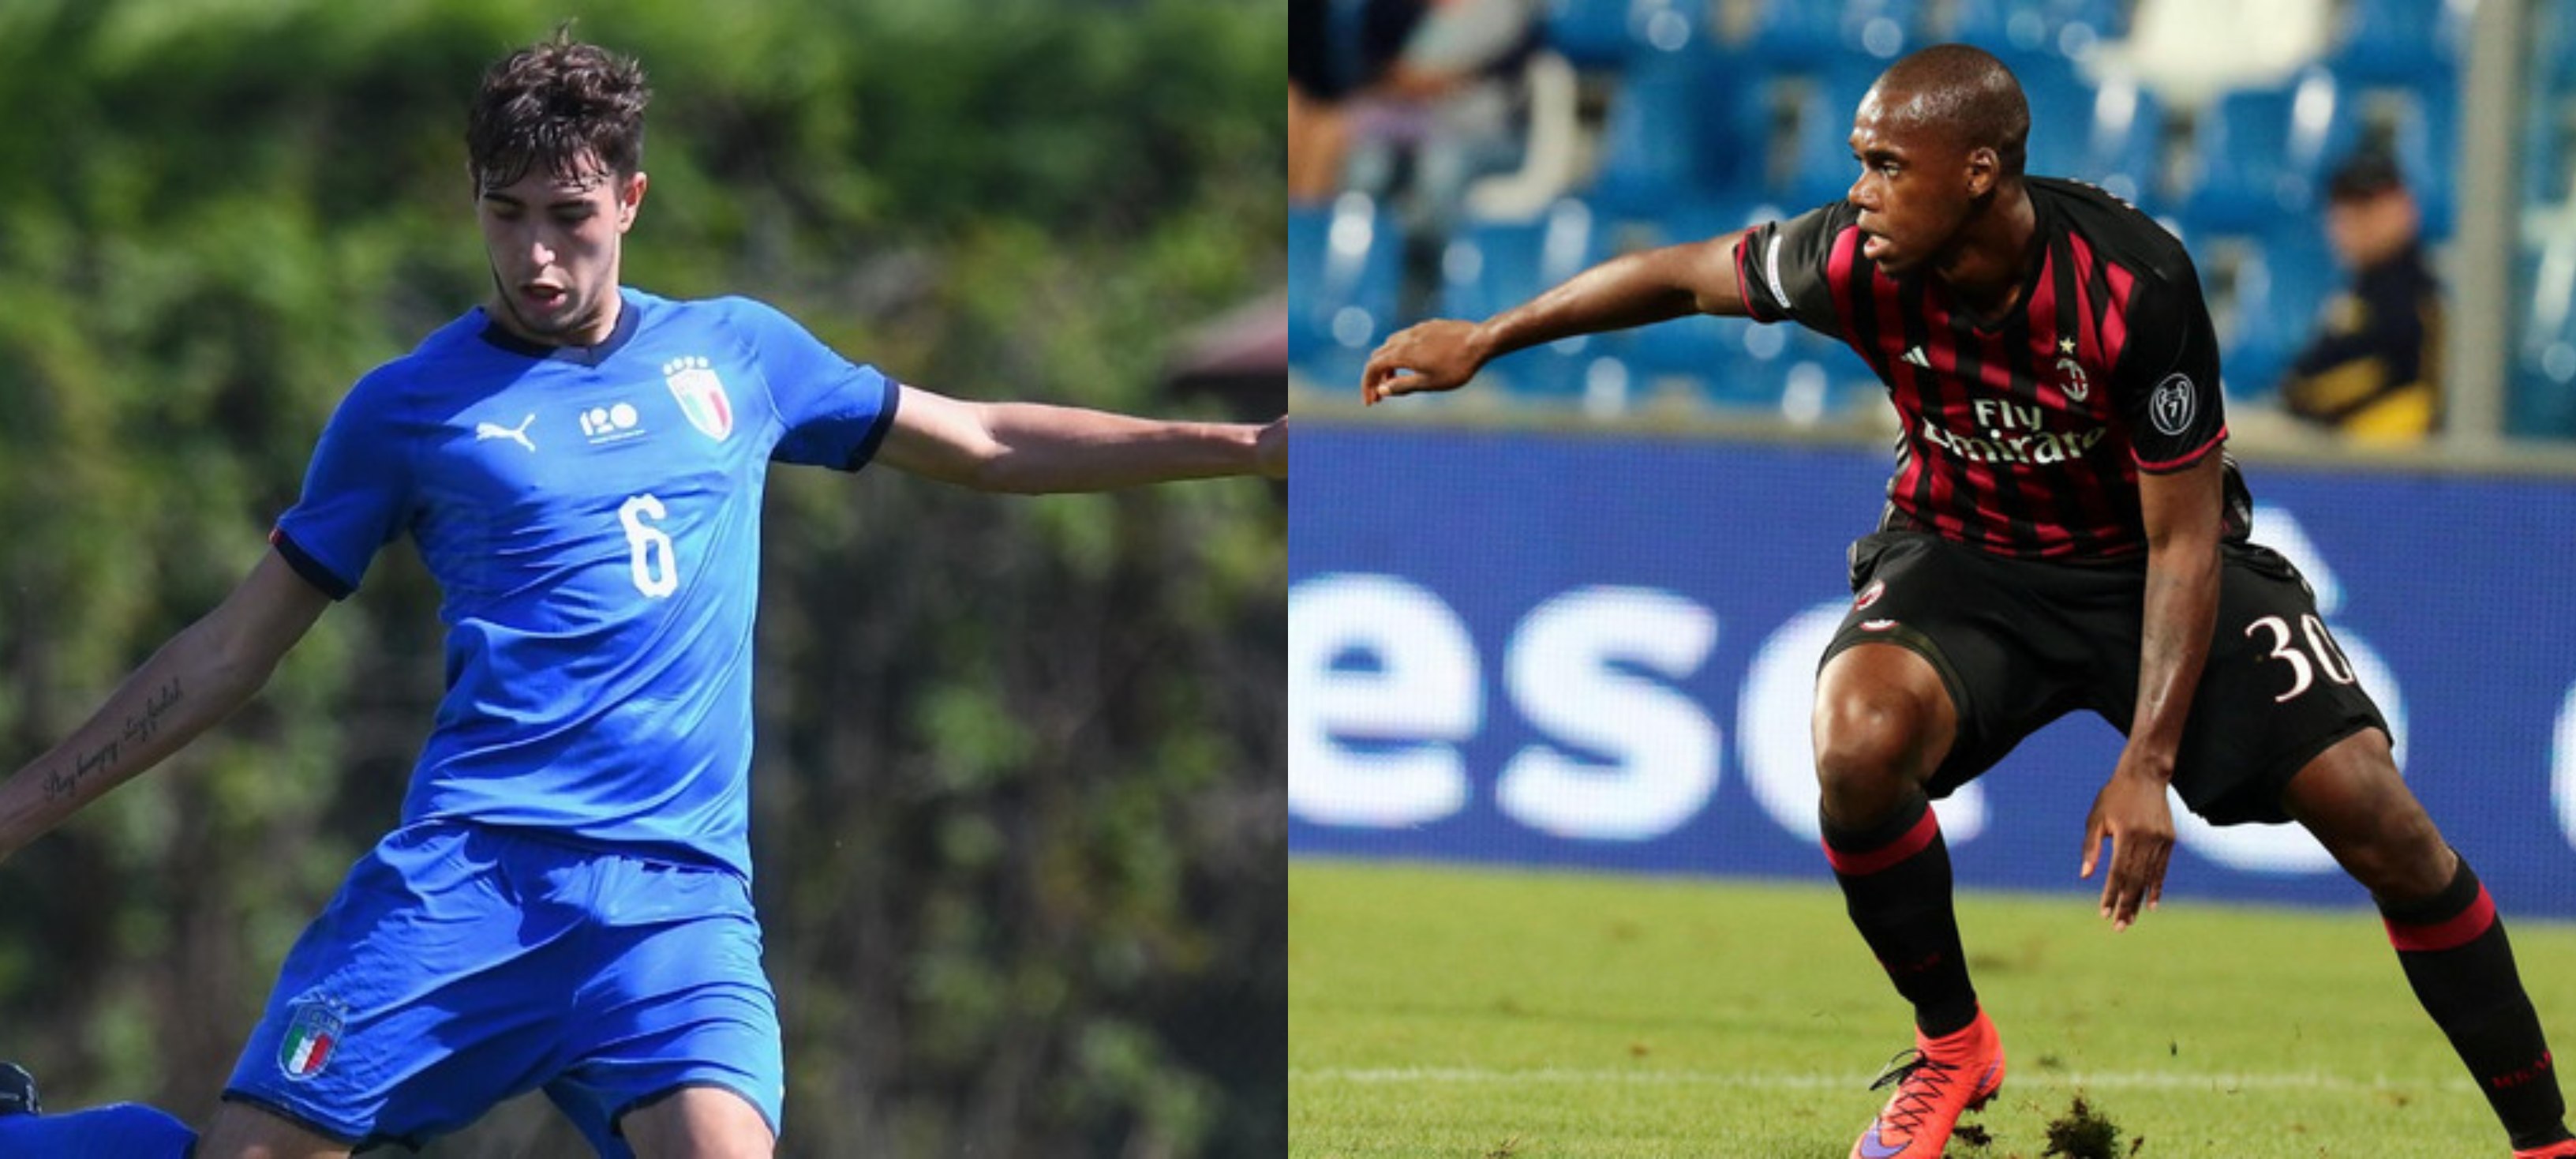 Olbia Calcio: ecco i due nuovi difensori Bellodi e Vergara